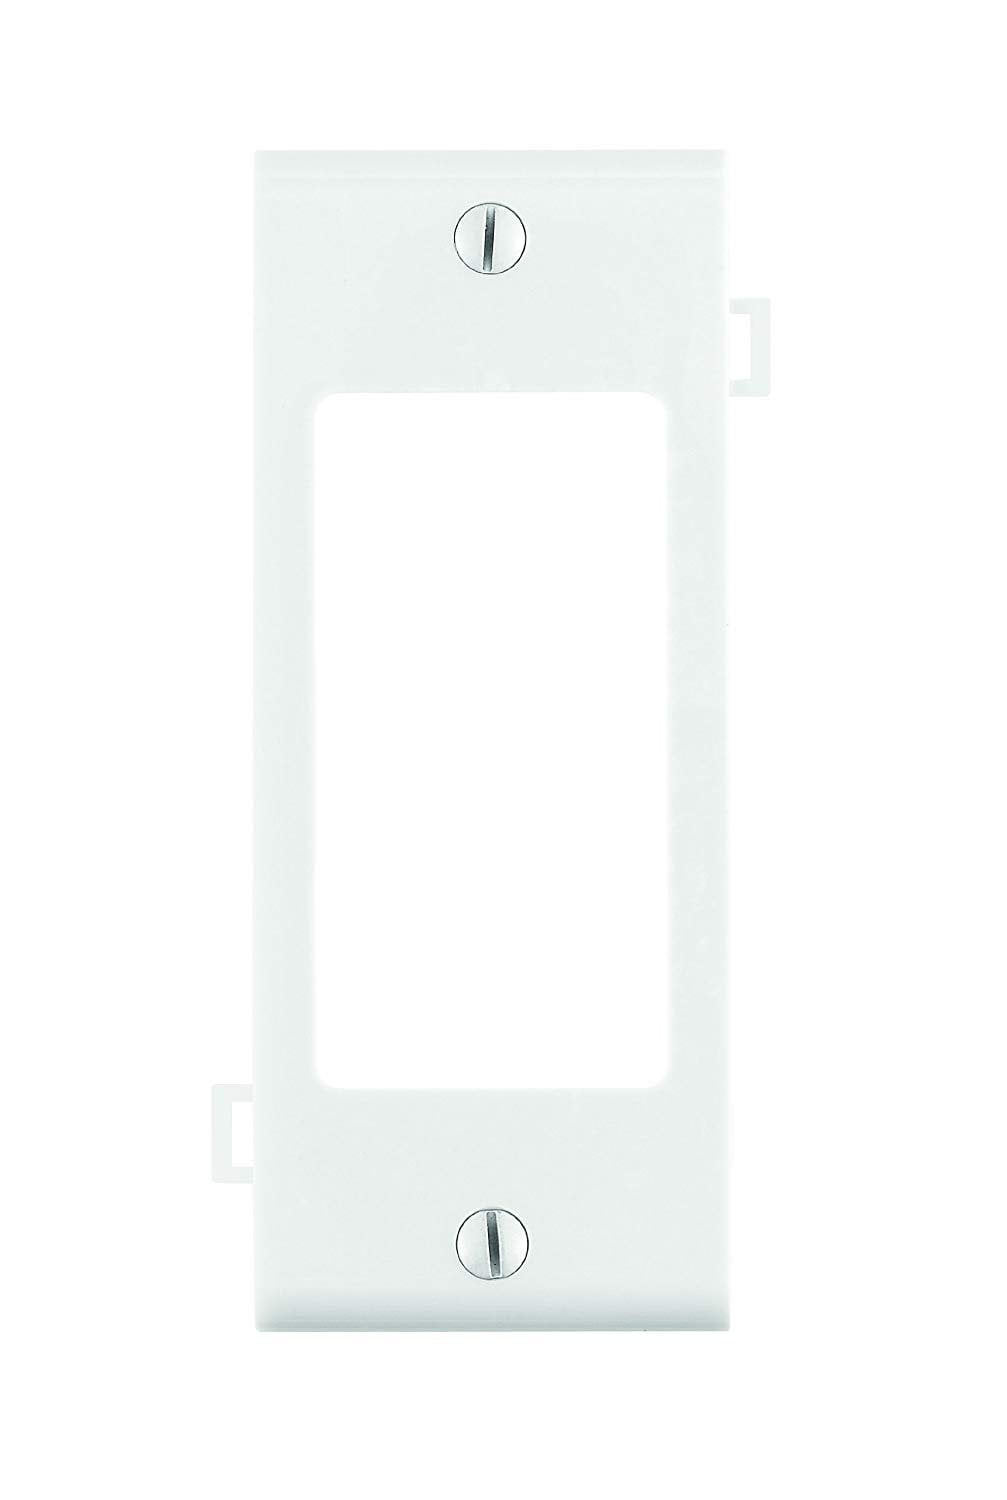 P&S White Jumbo 1G Decorator GFCI GFI Plastic Wallplate Thermoset Cover SPO26-W 